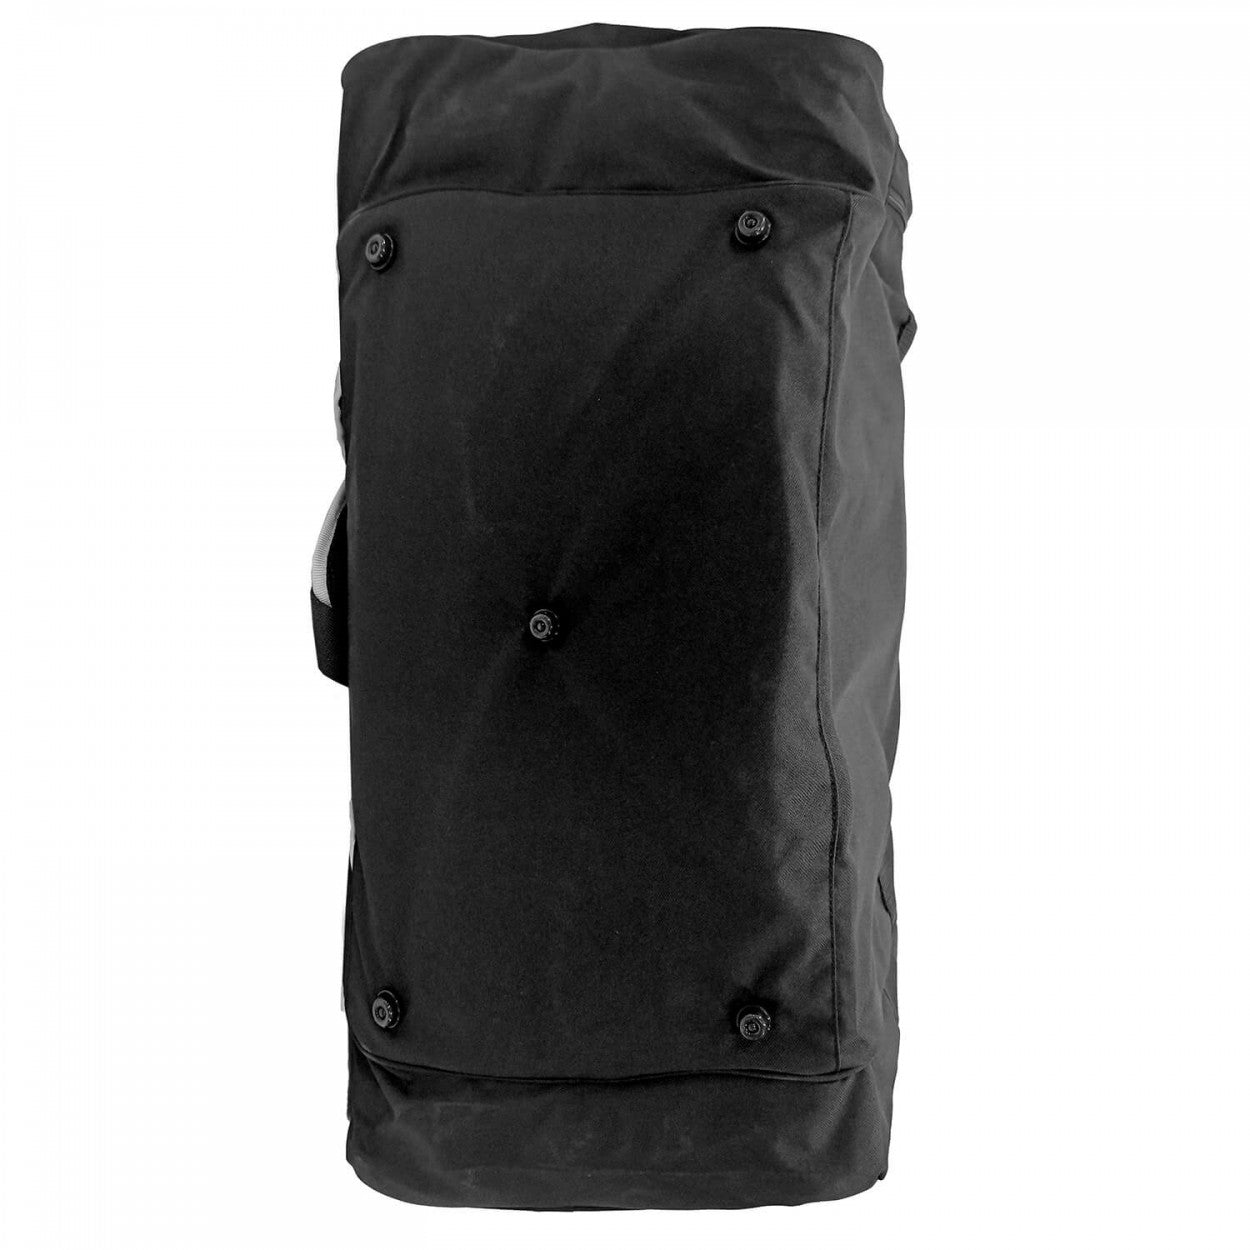 Αθλητική Τσάντα adidas TEAM TAEKWONDO με Θέση για Θώρακα Μεγάλη, Μαύρη